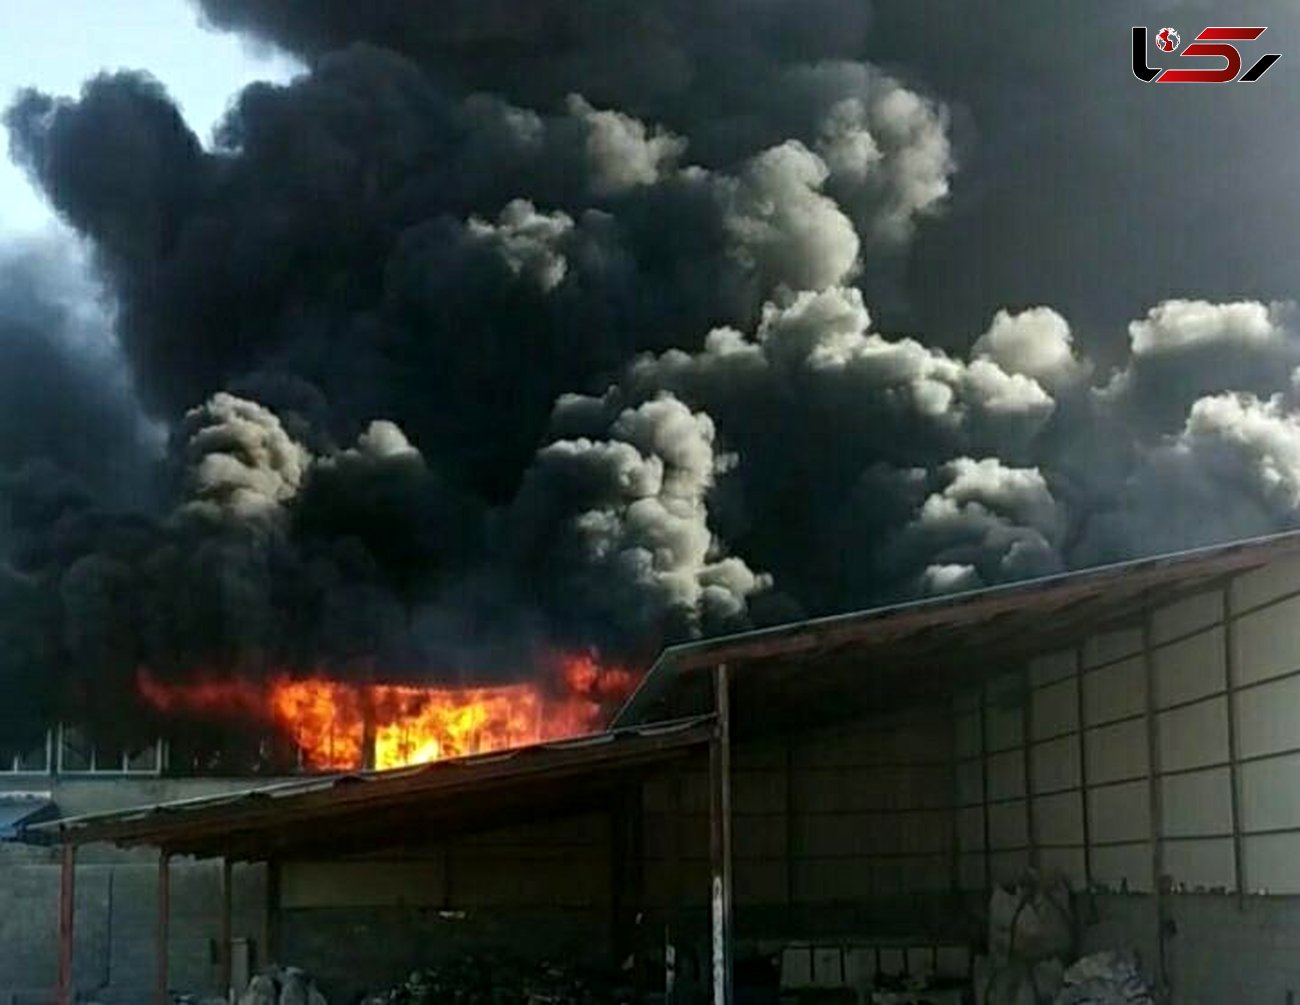 کارگاه تولید یونولیت پیرانشهر در آتش سوخت